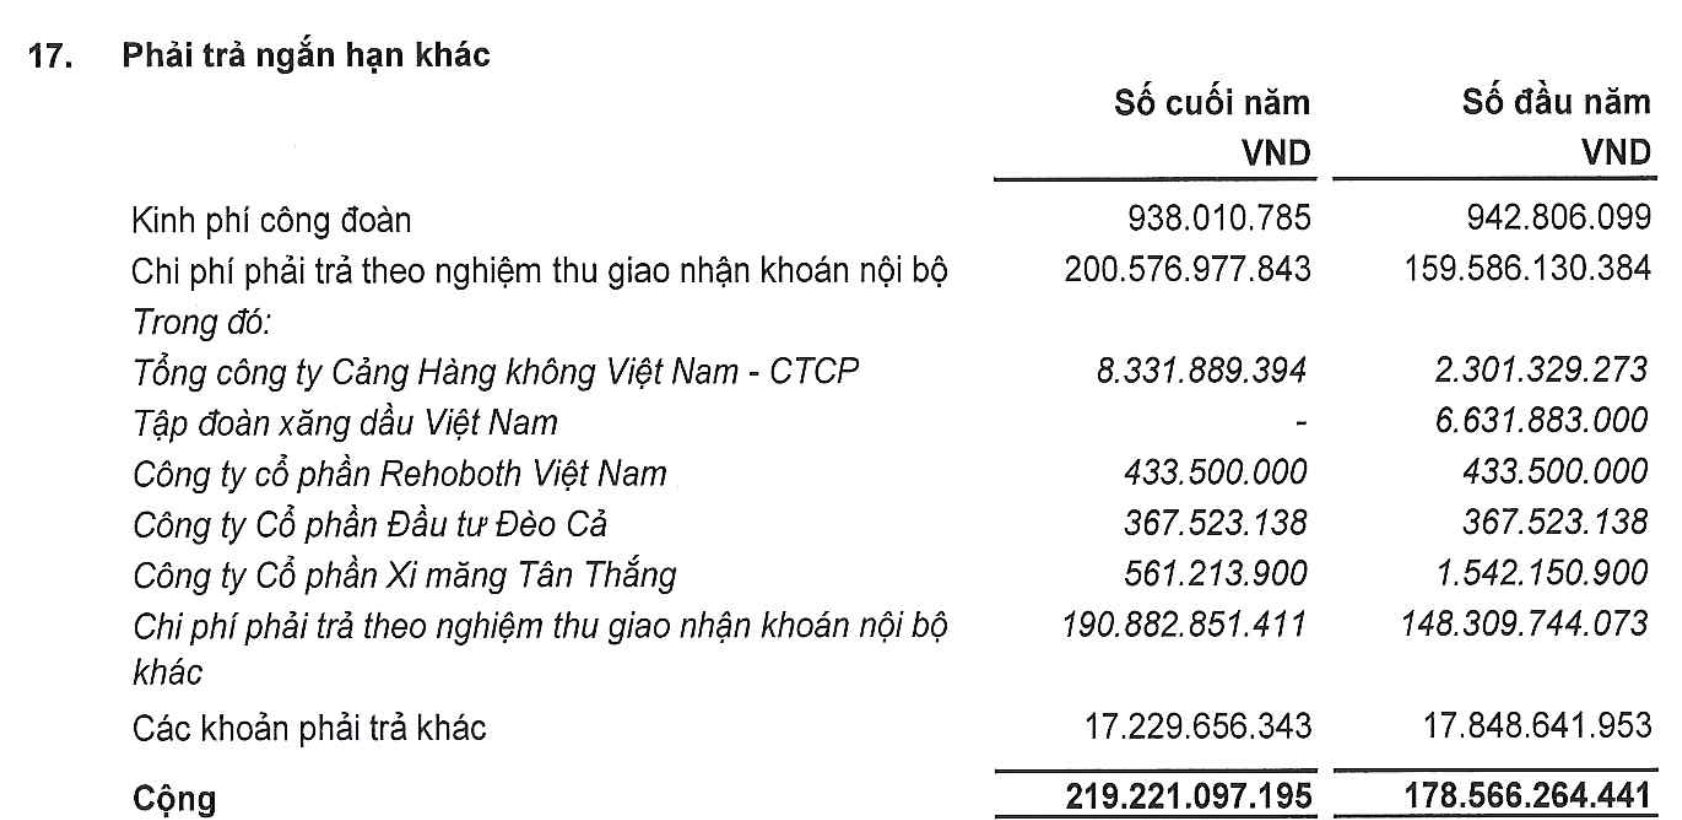 Bất ngờ cổ phiếu vừa tăng bốc đầu sau thông tin trúng gói thầu sân bay Long Thành: Sở hữu đất vàng trung tâm Hà Nội, nợ phải trả gấp 5 lần vốn chủ sở hữu - Ảnh 3.